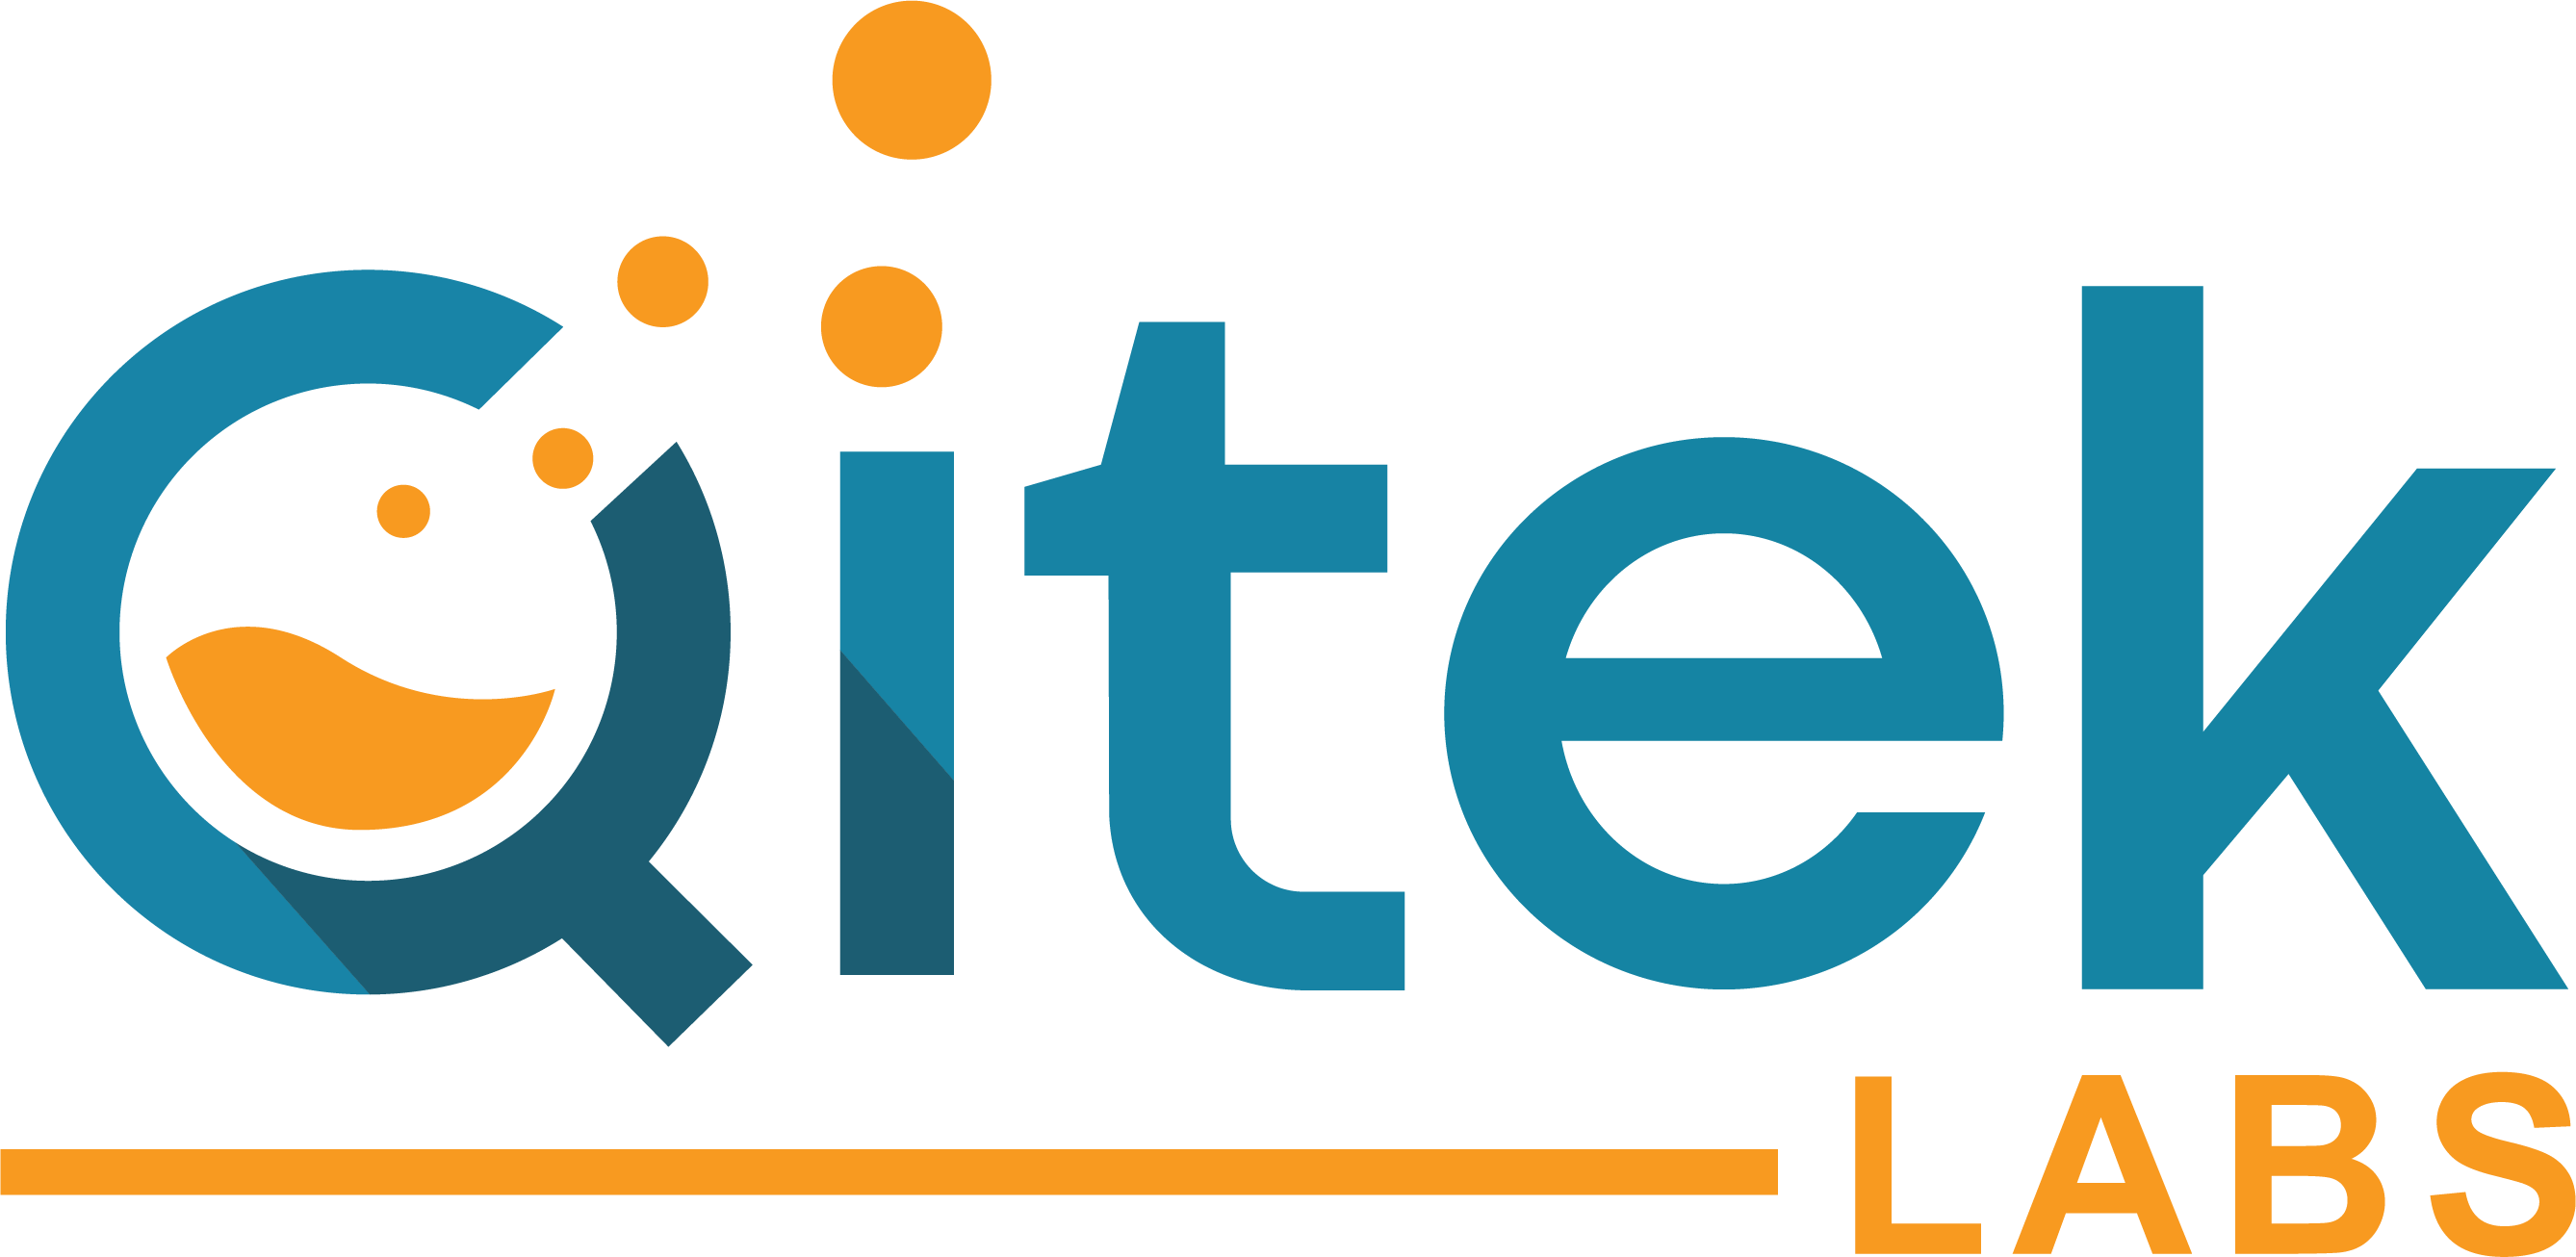 Qitek Labs Logo